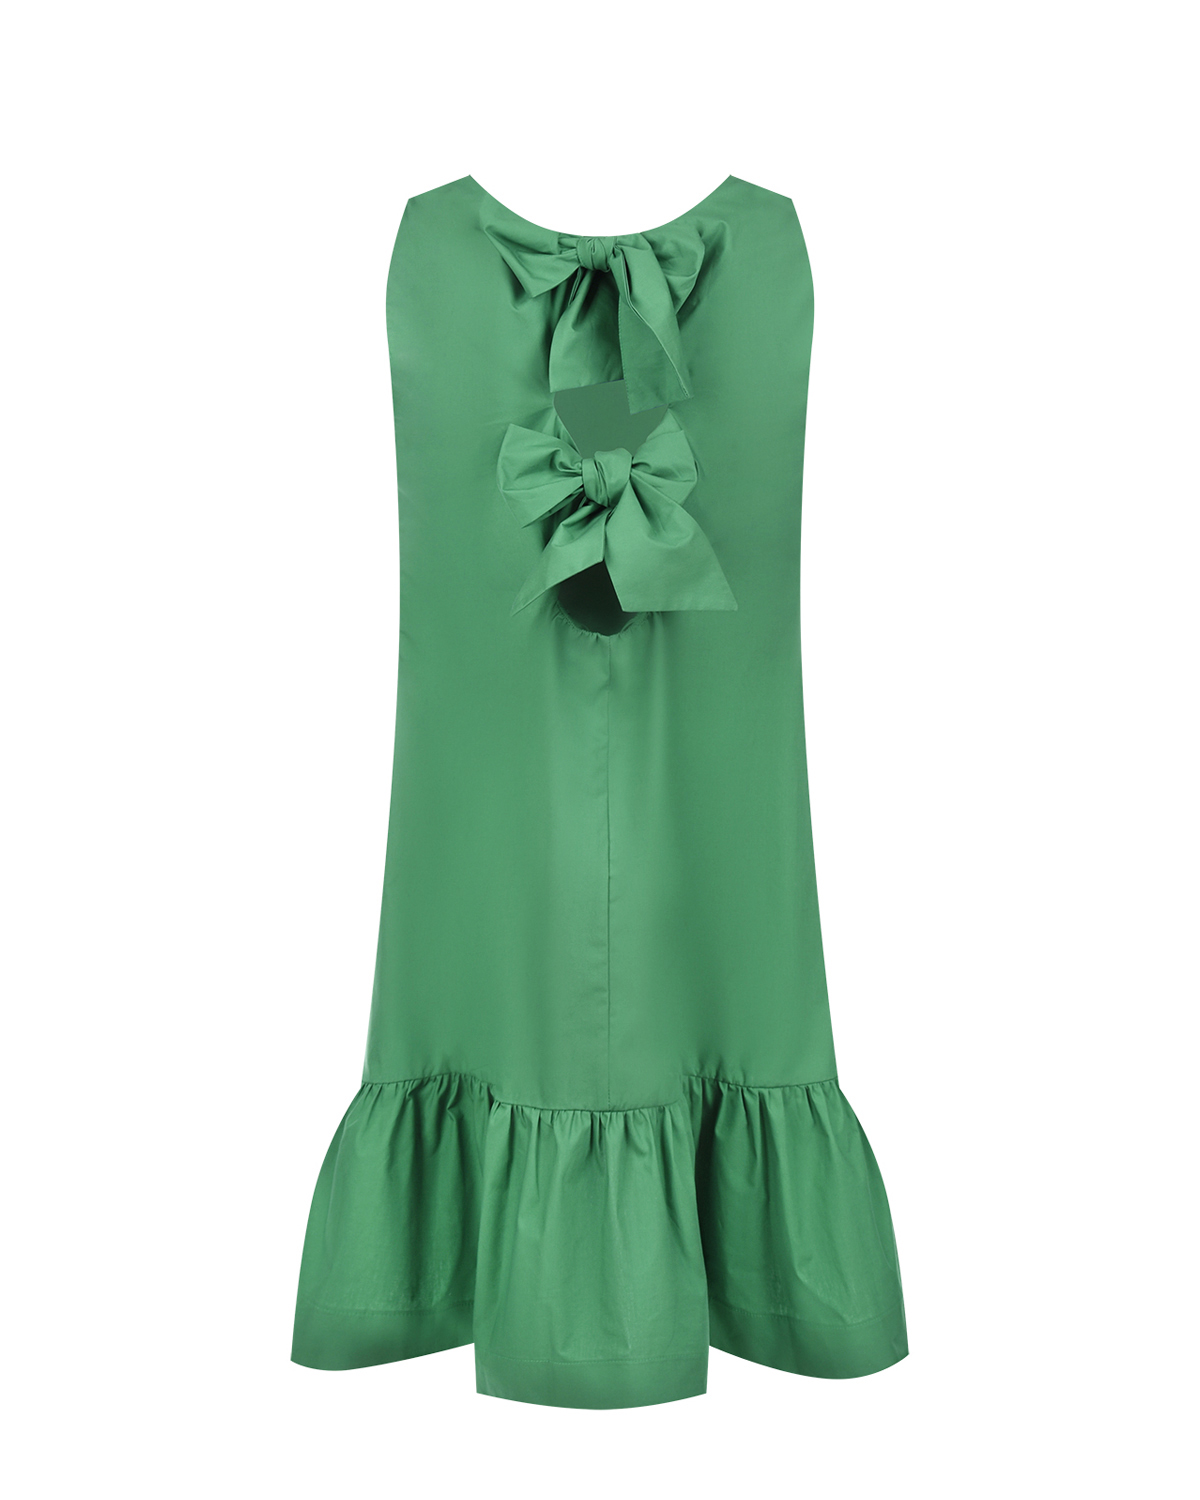 Зеленое платье с бантами на спинке Attesa, размер 40, цвет зеленый - фото 6